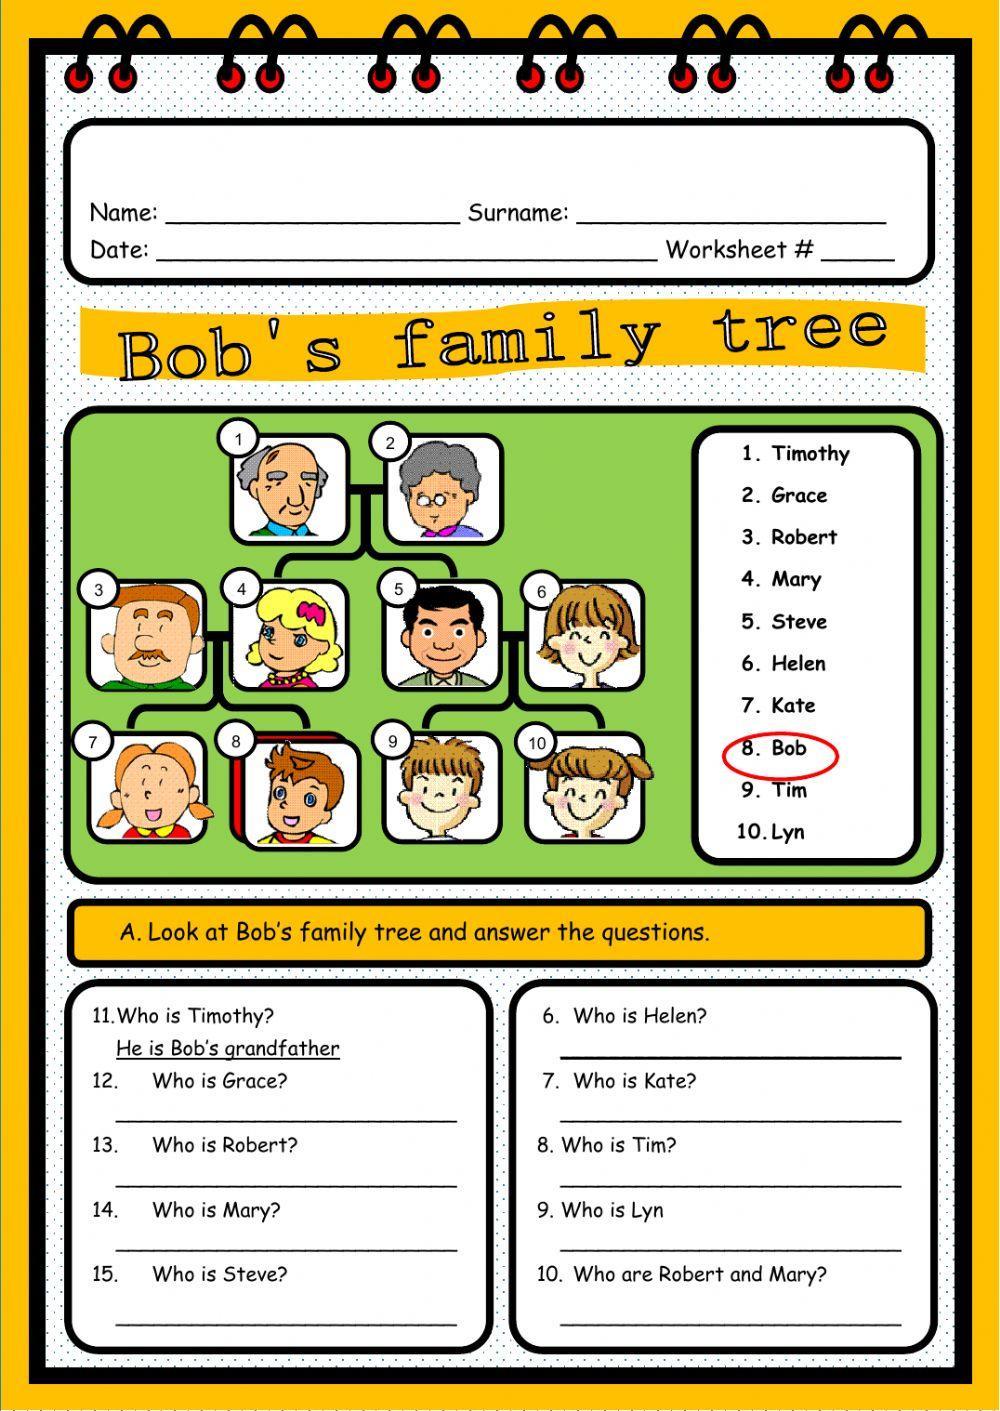 Bob's Family Tree